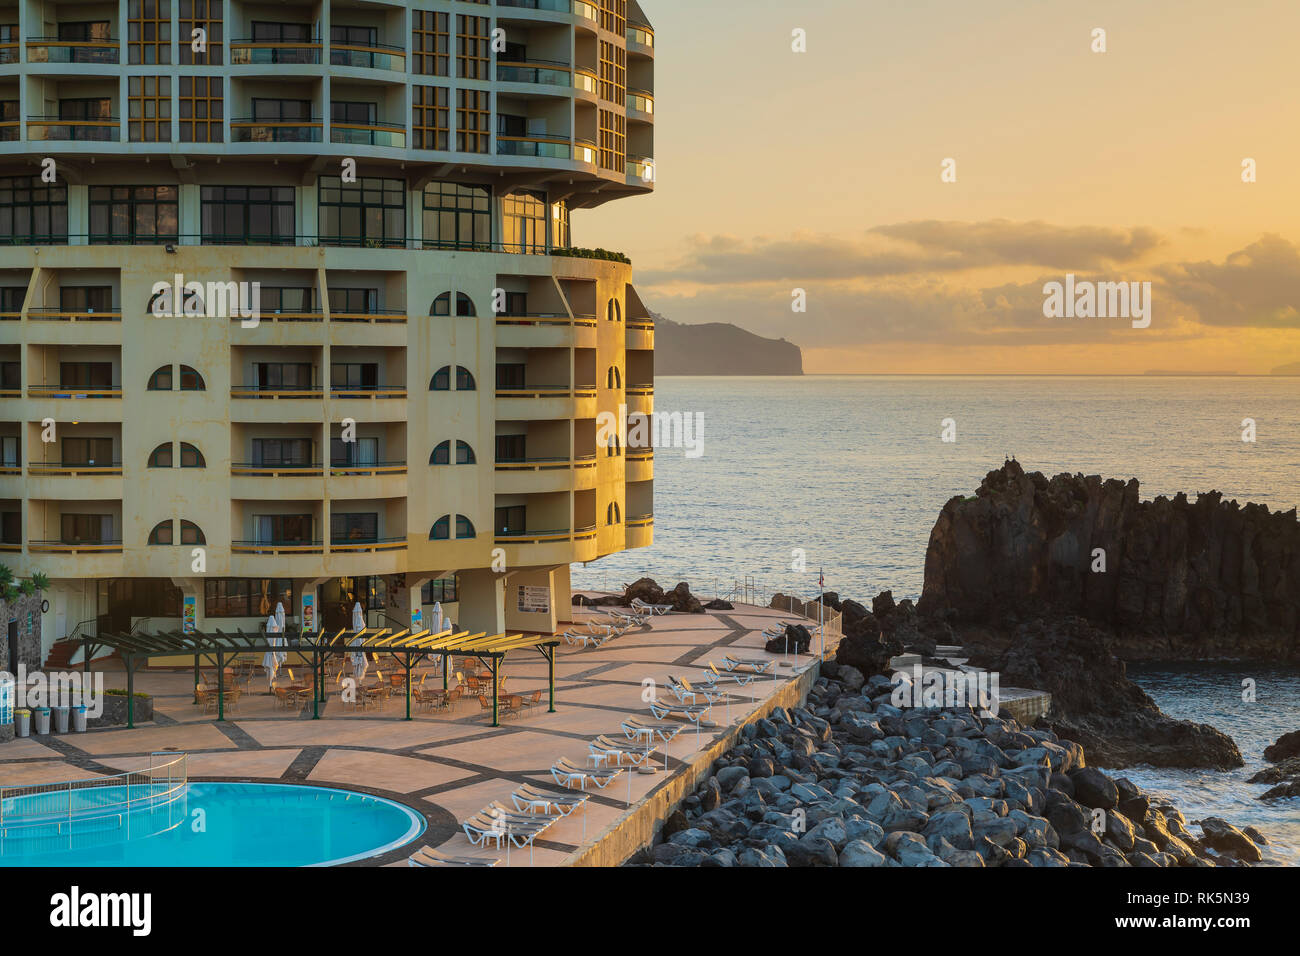 Una imagen de un hermoso amanecer en la fachada de un hotel en la costa sur de la isla de Madeira, Portugal. Foto de stock